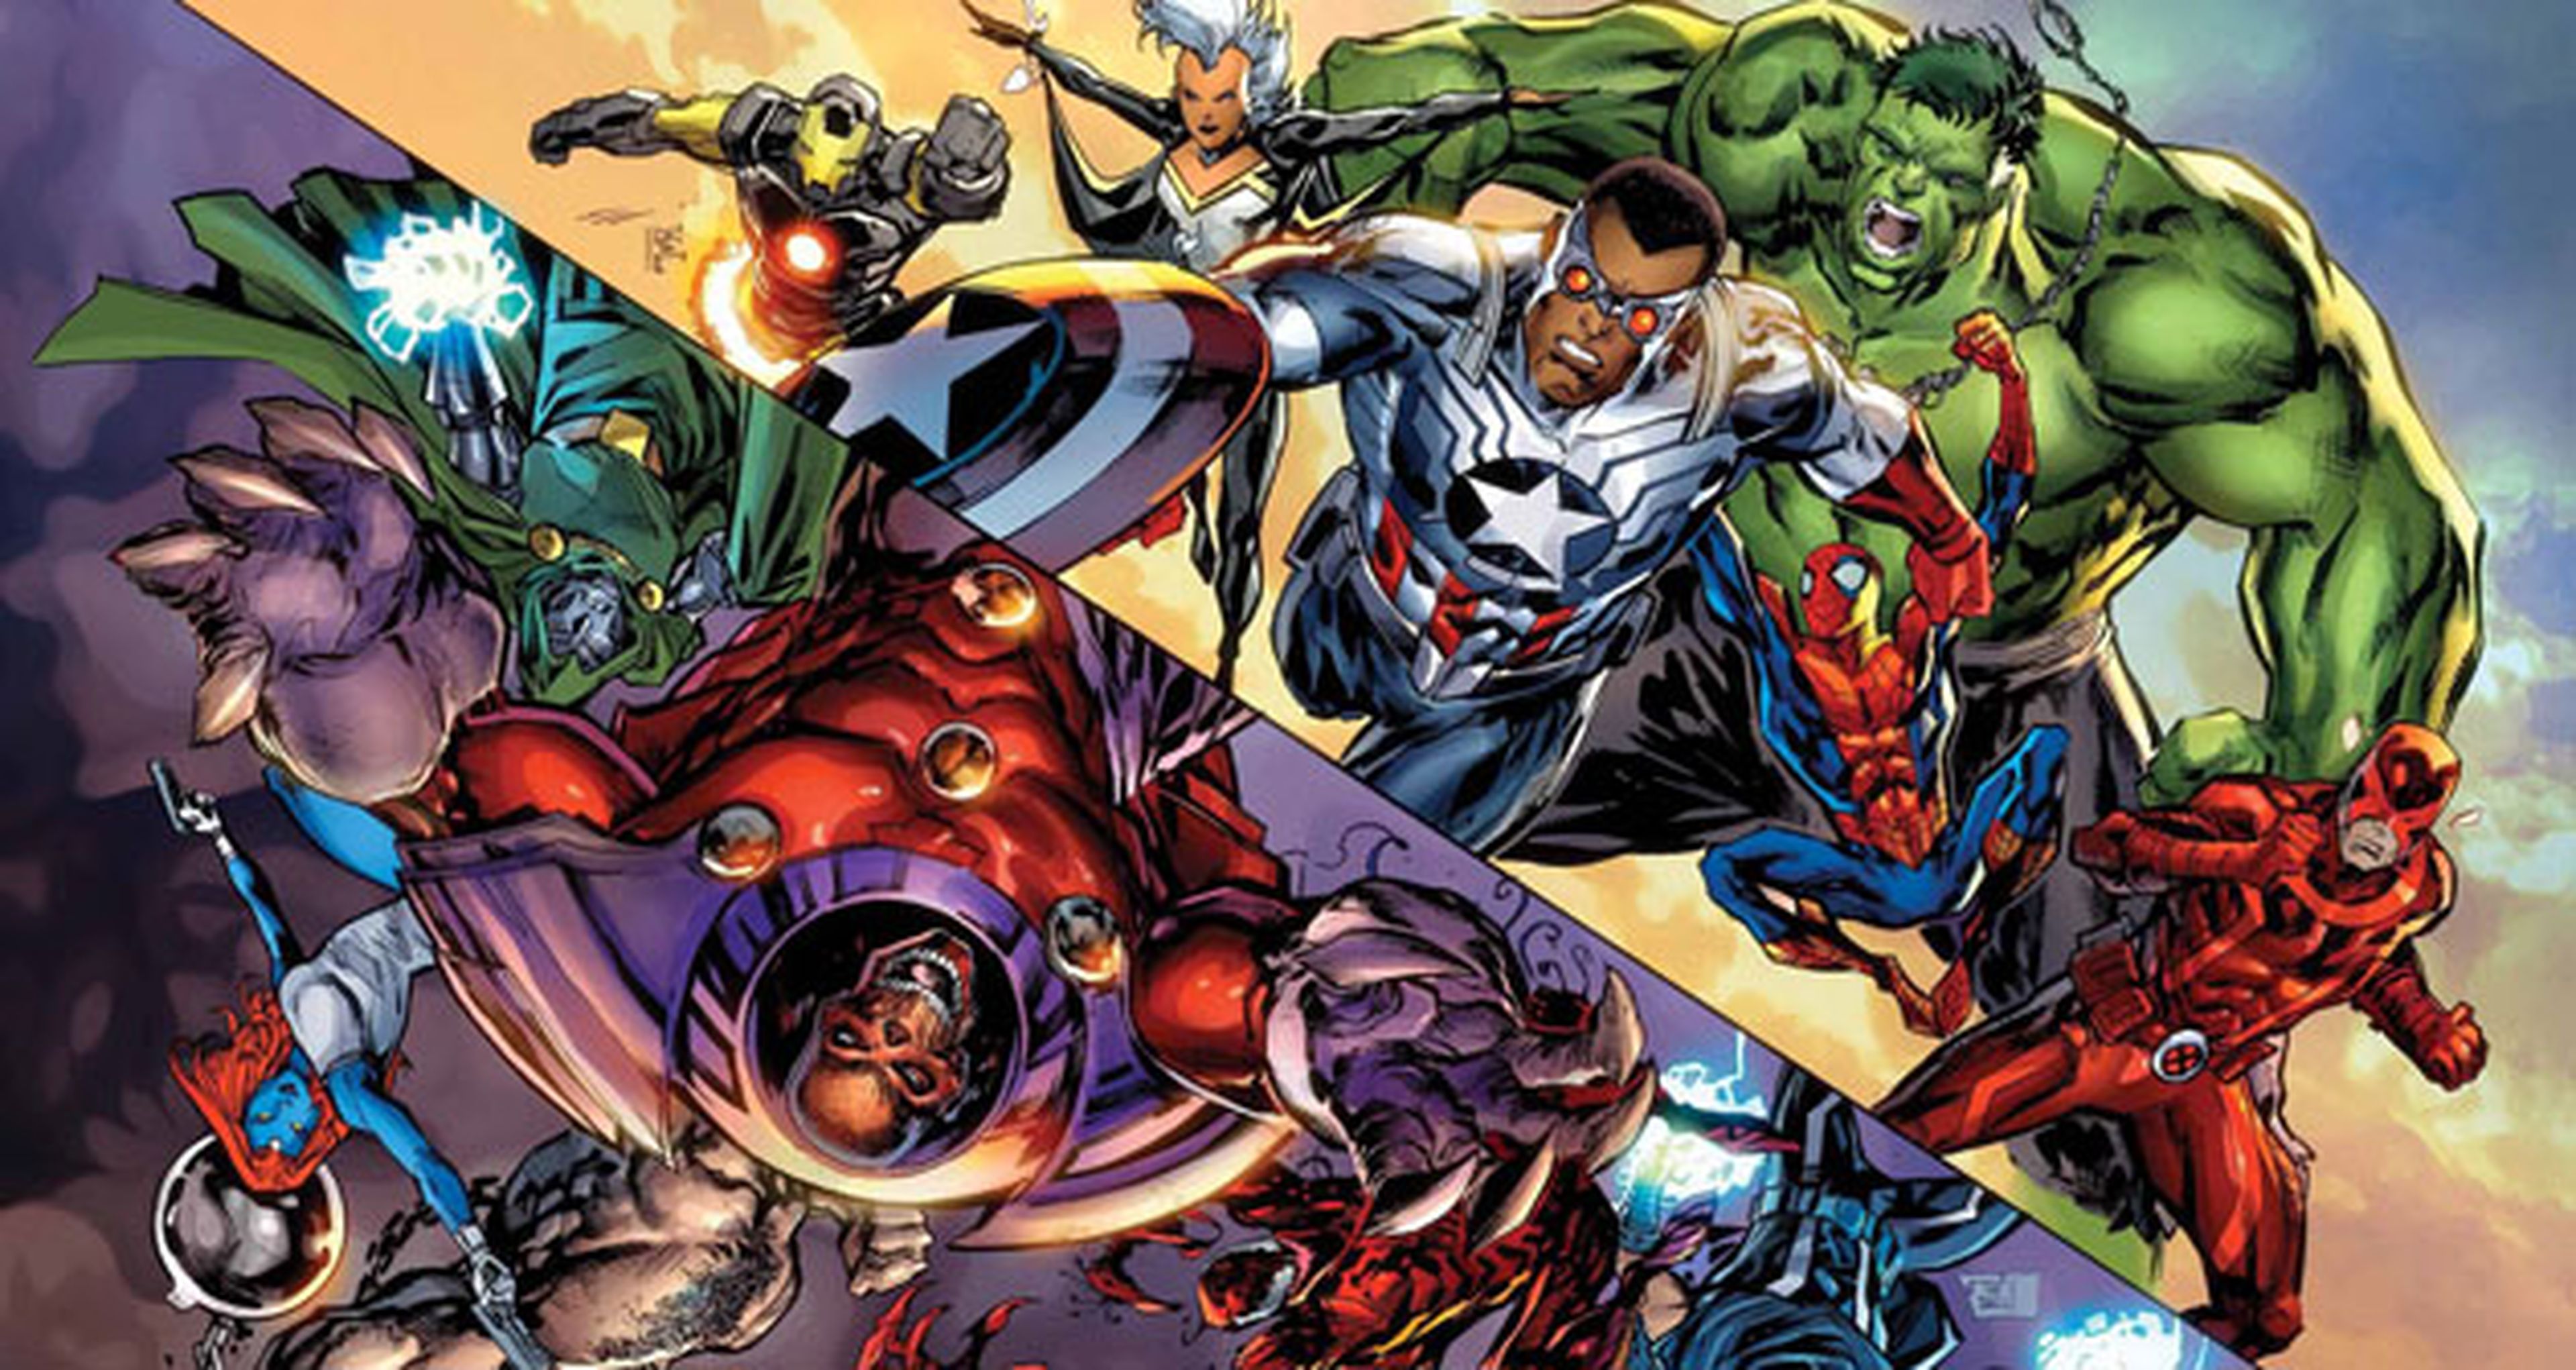 Axis: Reseña inversa del crossover de Marvel